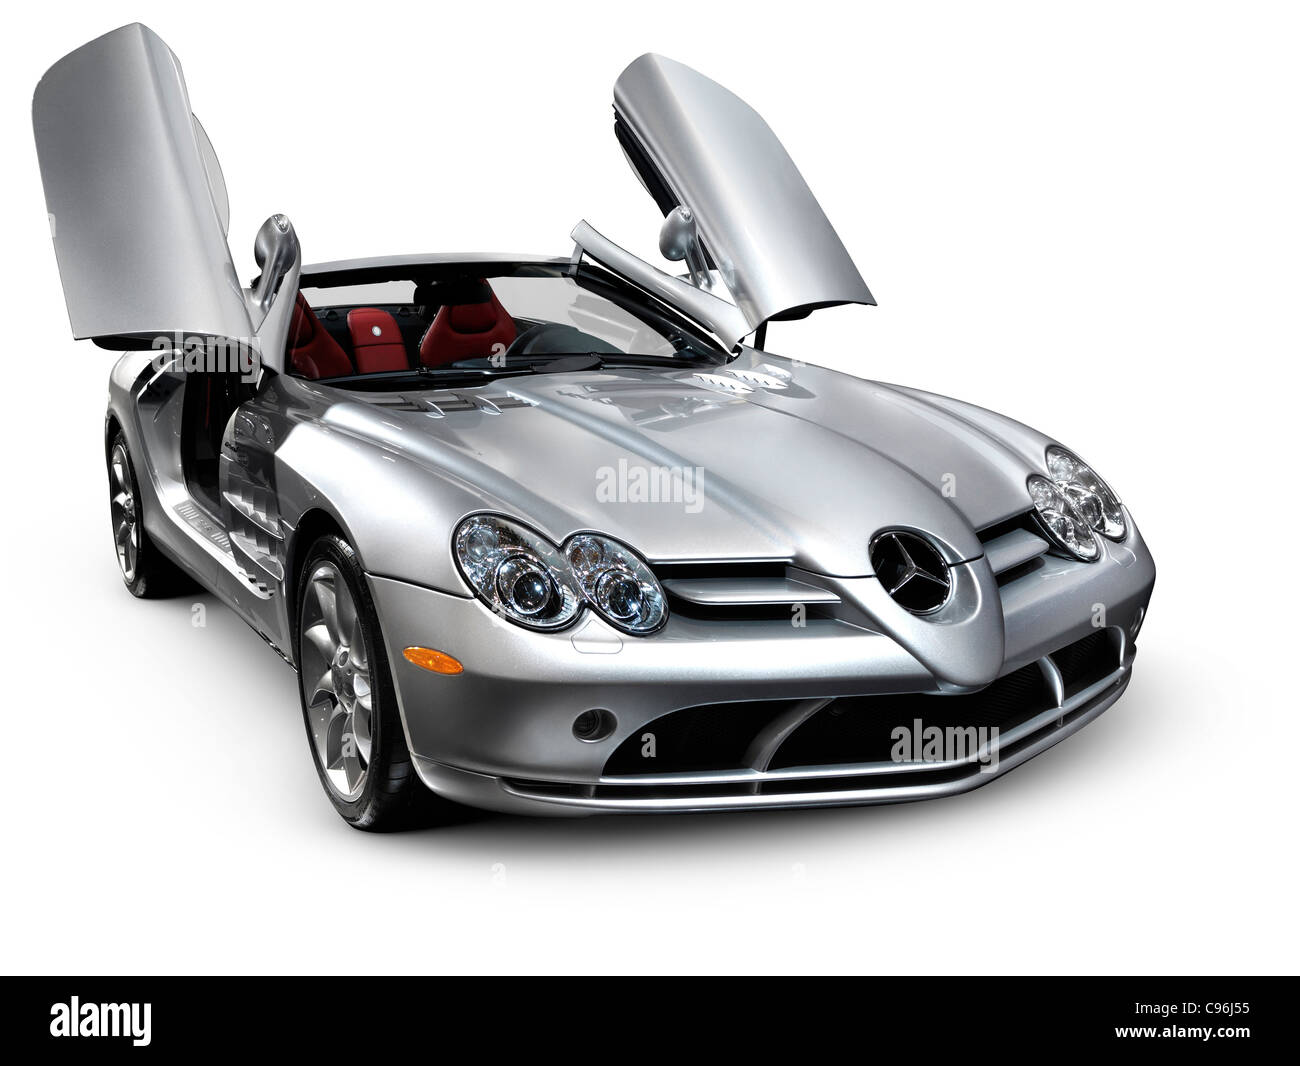 Mercedes Benz Schlüsselanhänger auf weißen Marmor Oberfläche  Stockfotografie - Alamy